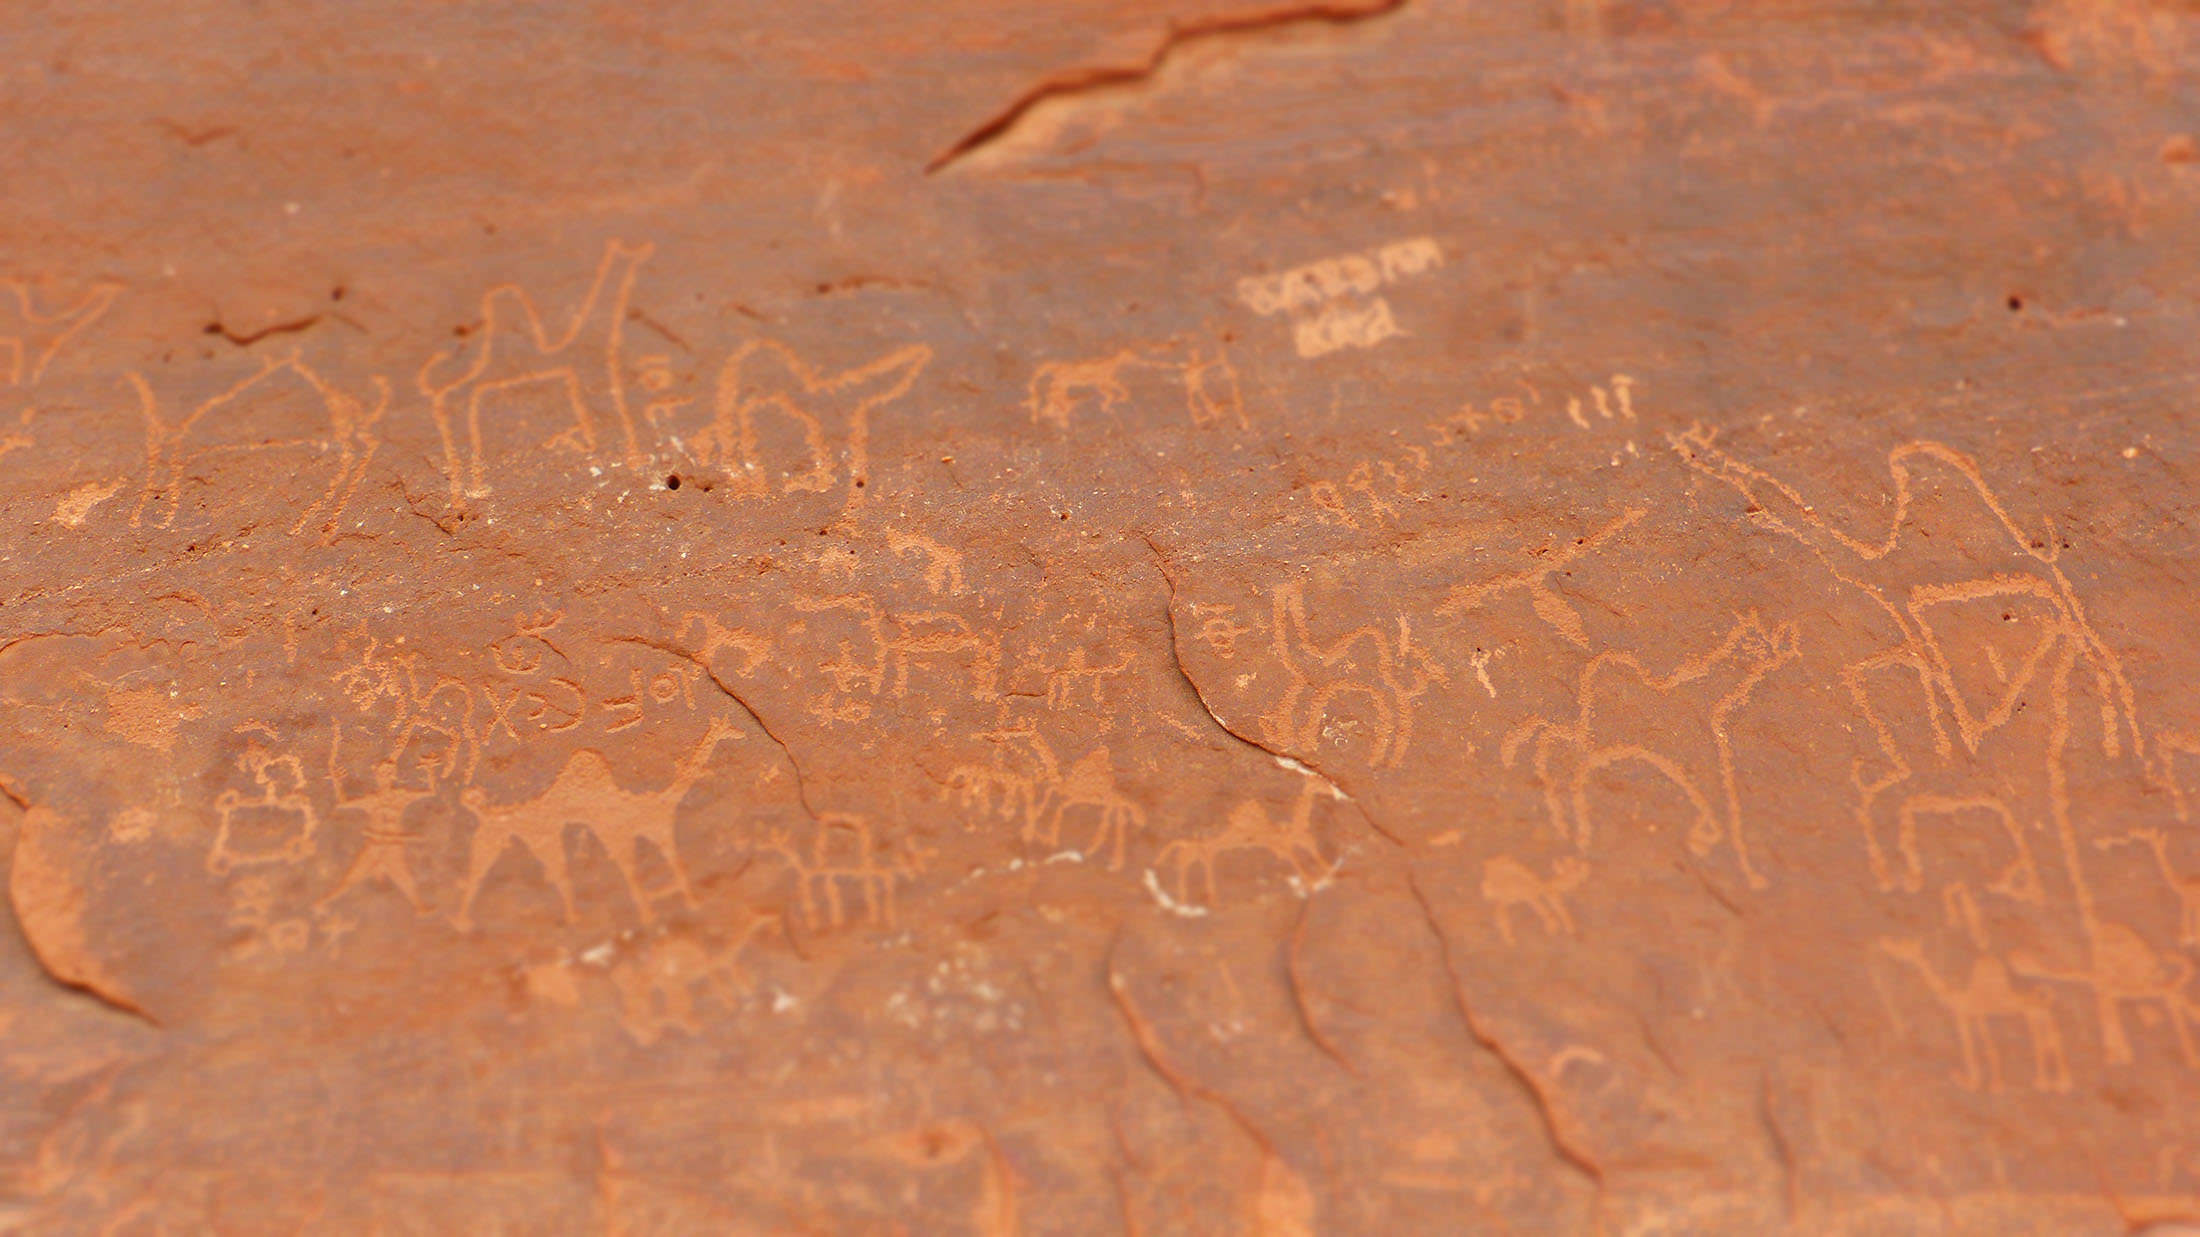 Stone inscriptions of Jebel Anafishiya in Wadi Rum Jordan